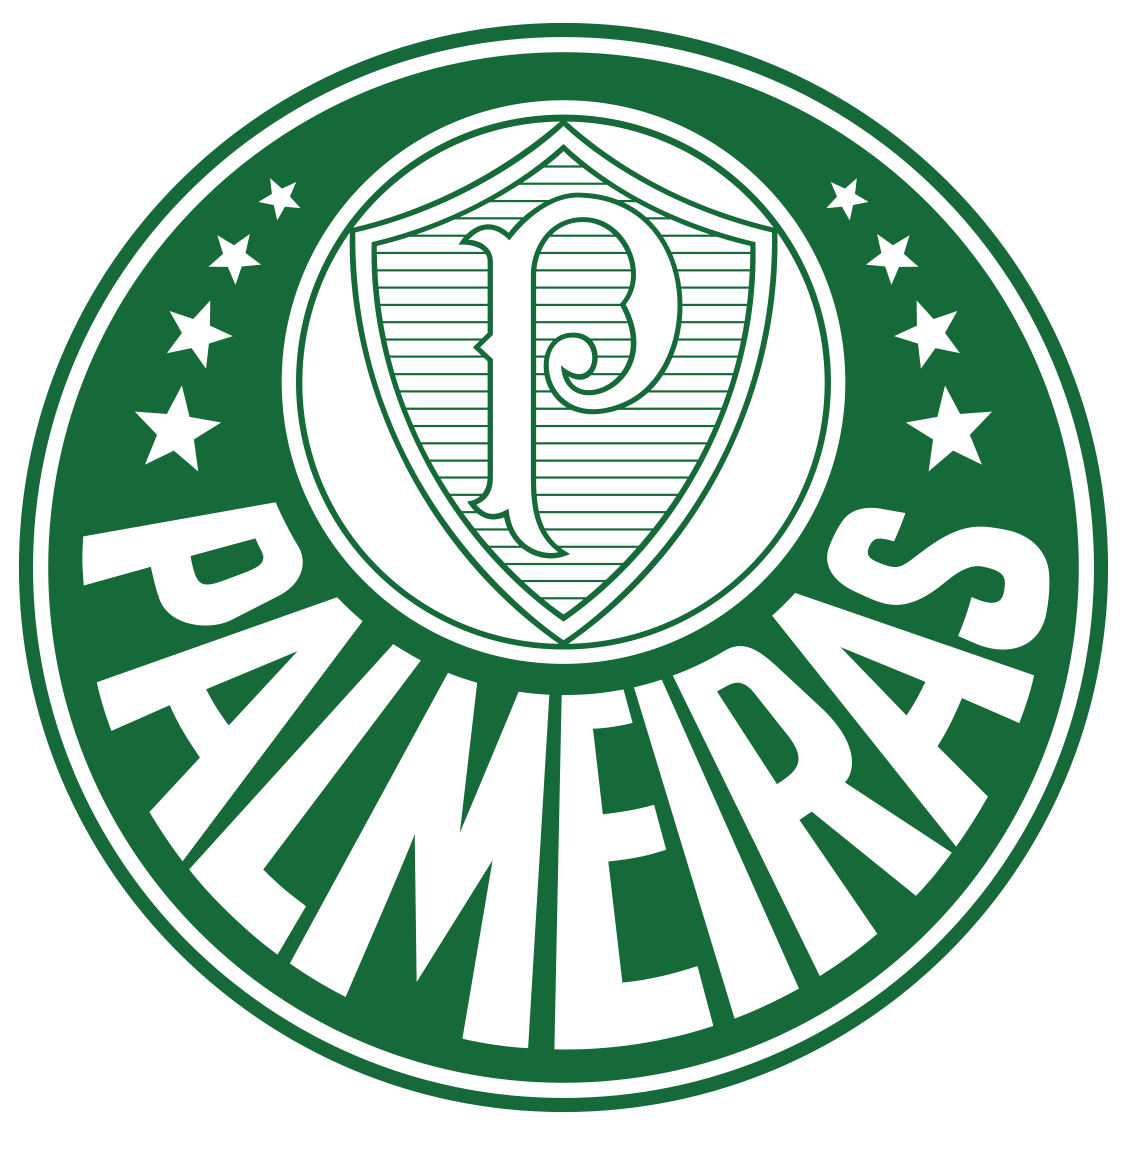 Imagem do escudo do Palmeiras